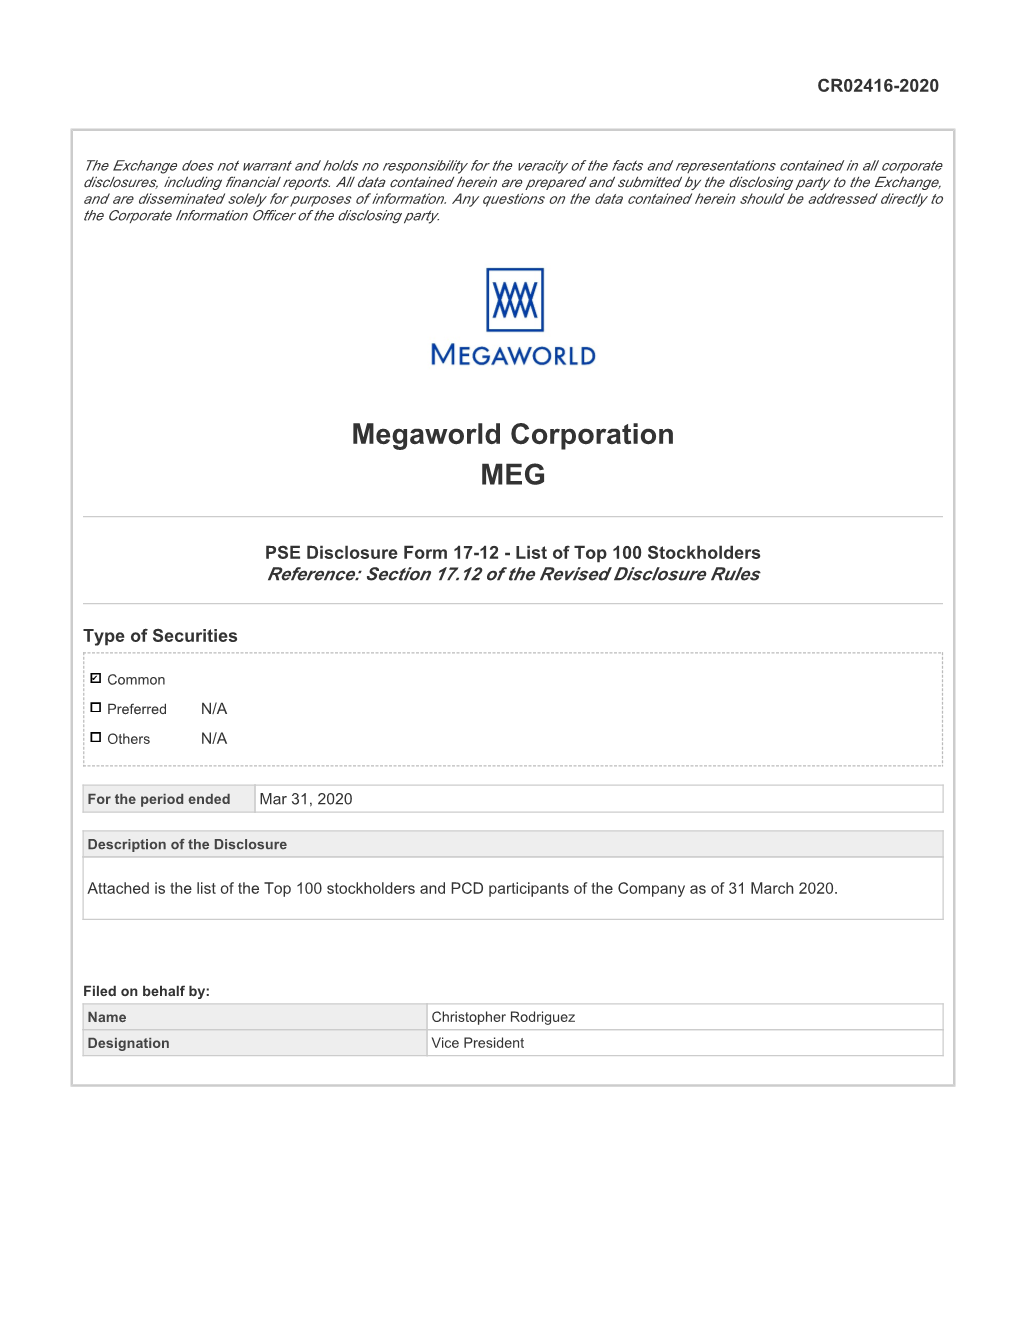 Megaworld Corporation MEG